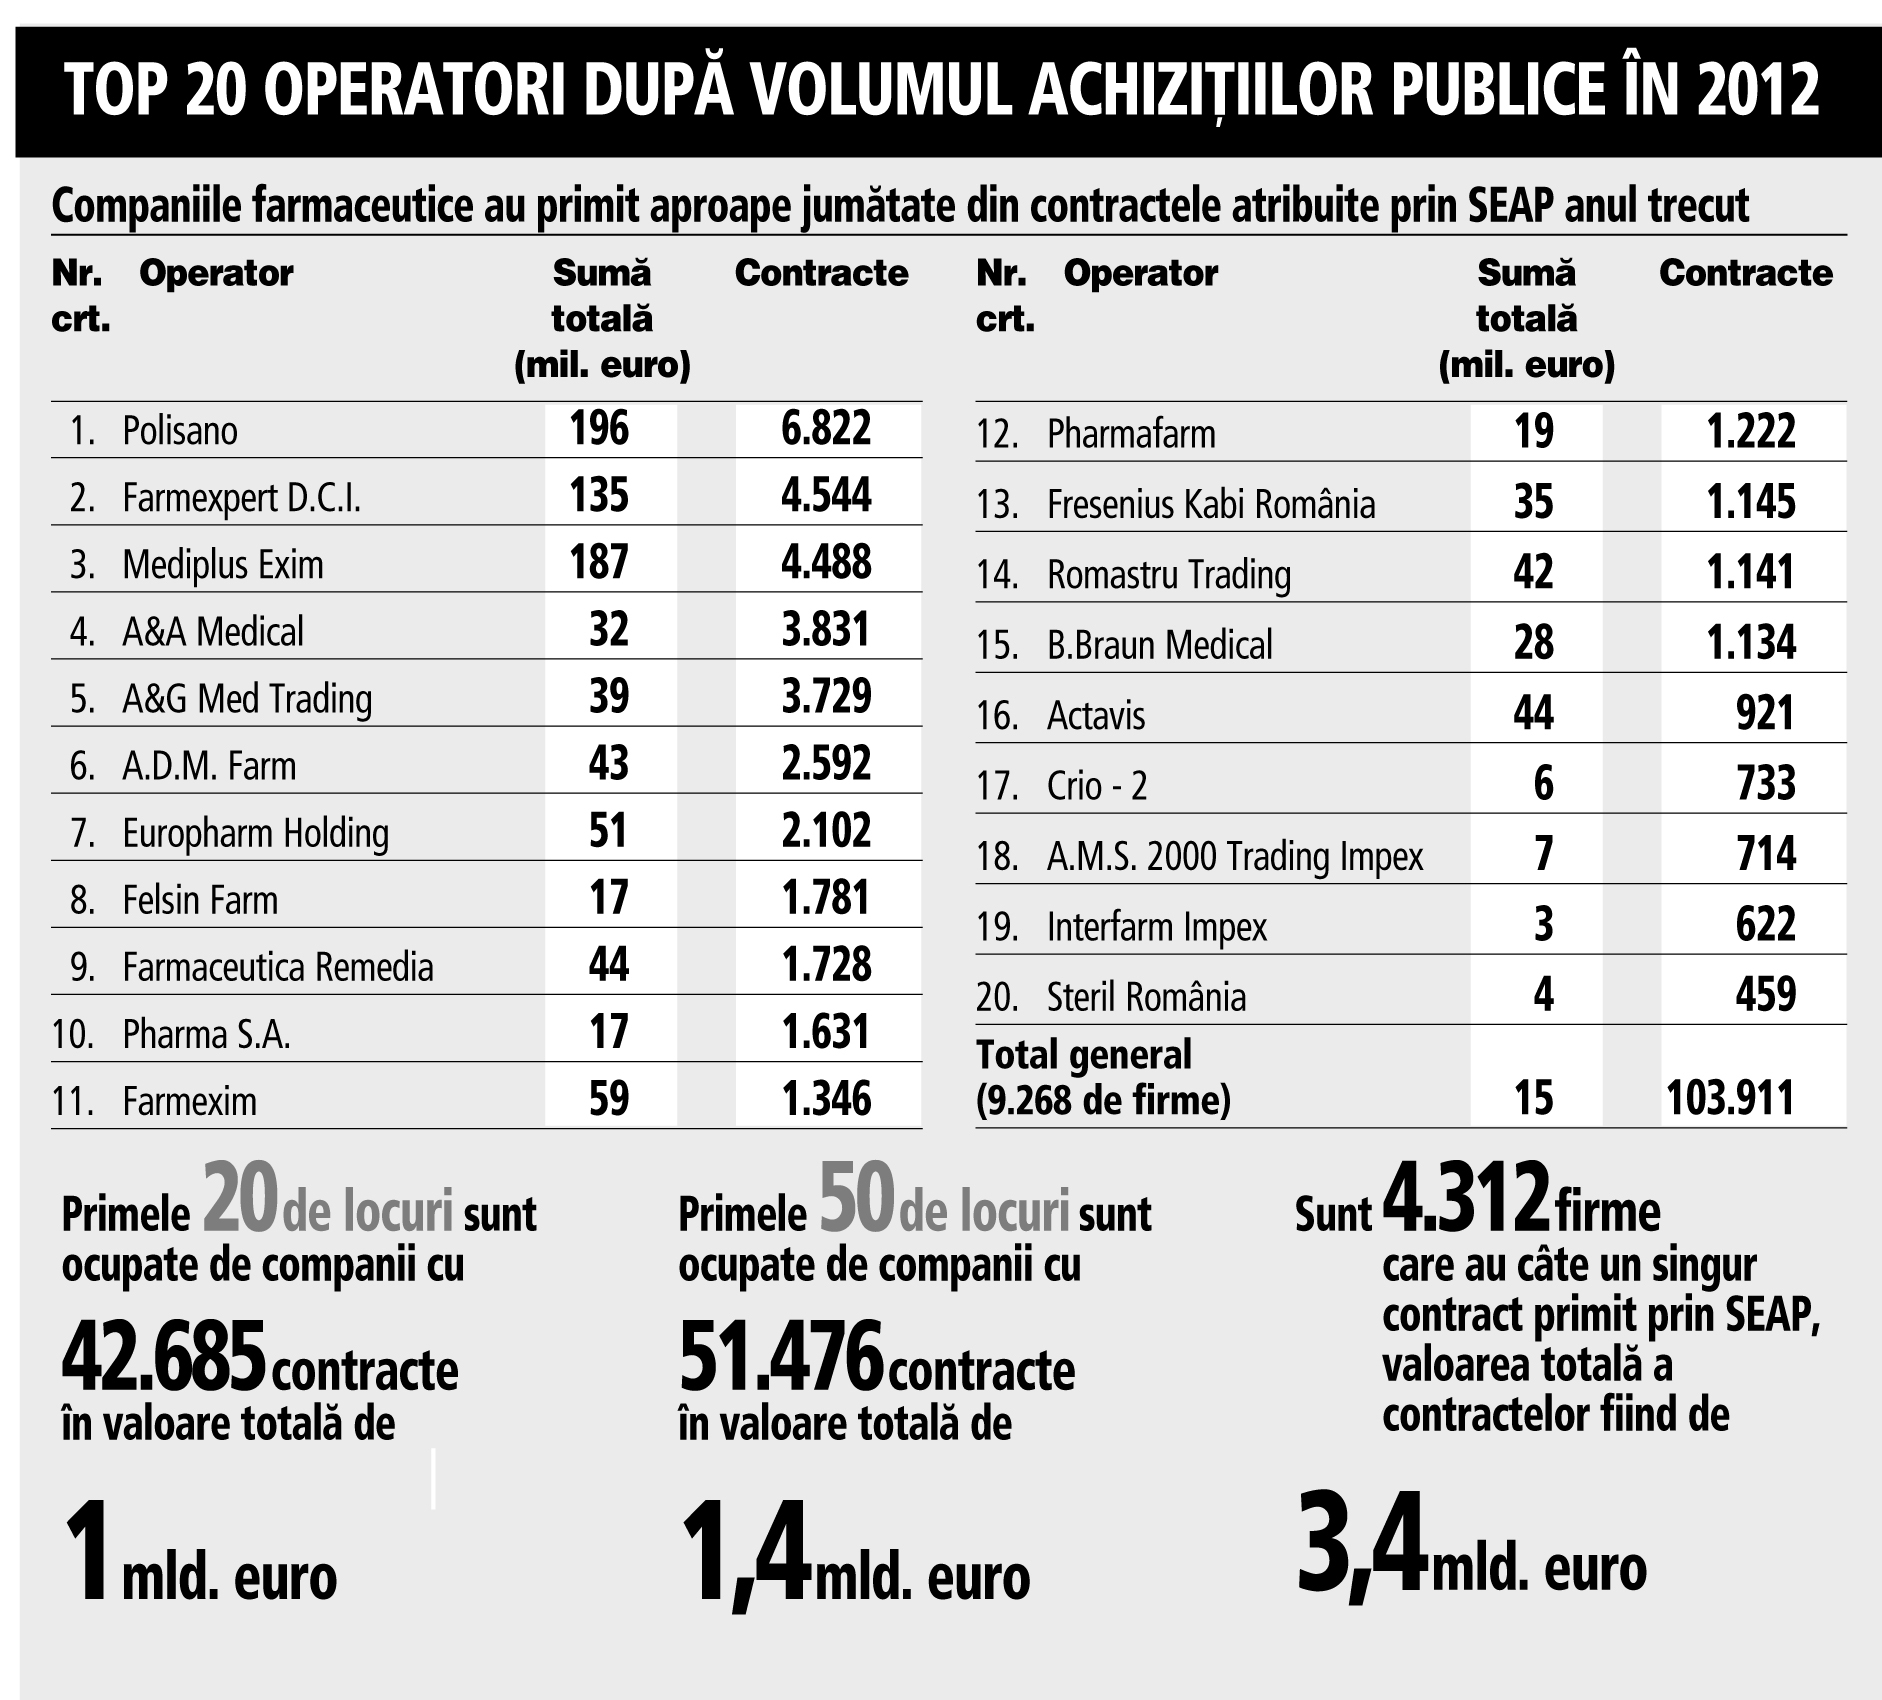 Infografic: Clasamentul operatorilor farmaceutici după volumul achiziţiilor publice in 2012